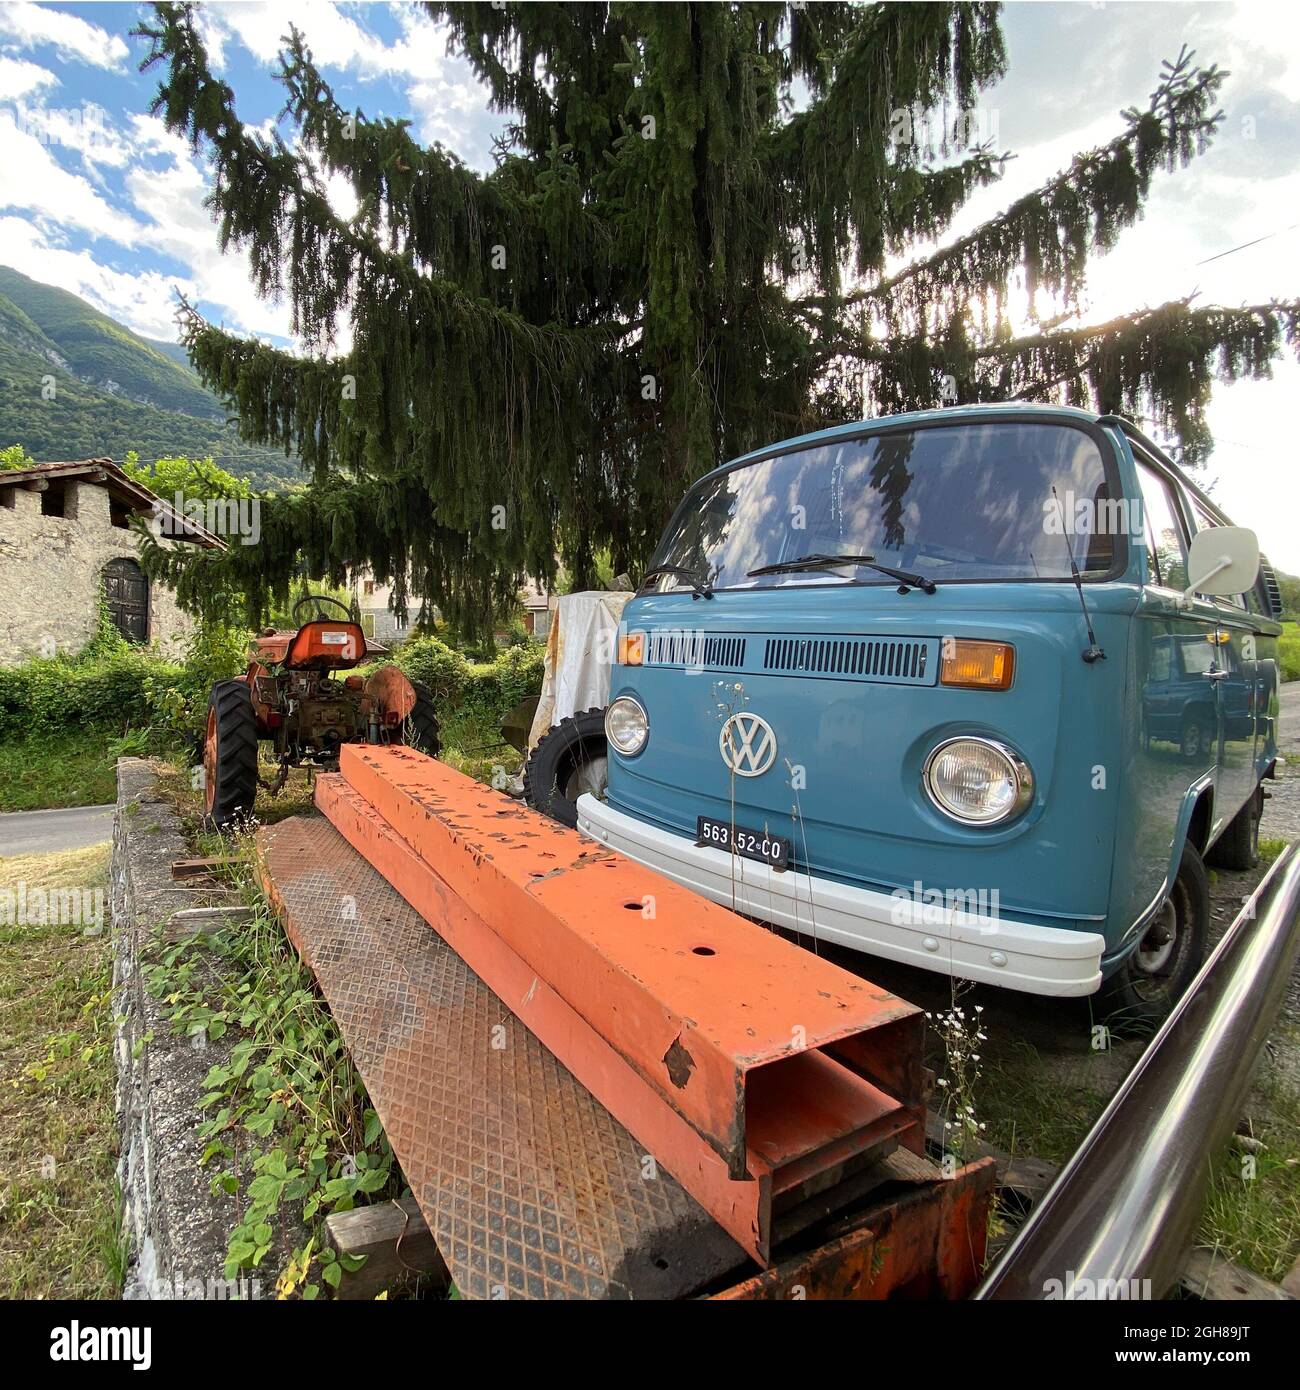 Ein historischer VW Bus T2 mit Kennzeichen von Como parkt an einem Oldtimer Traktor Fiat la piccola aus den 60er Jahren. Foto Stock